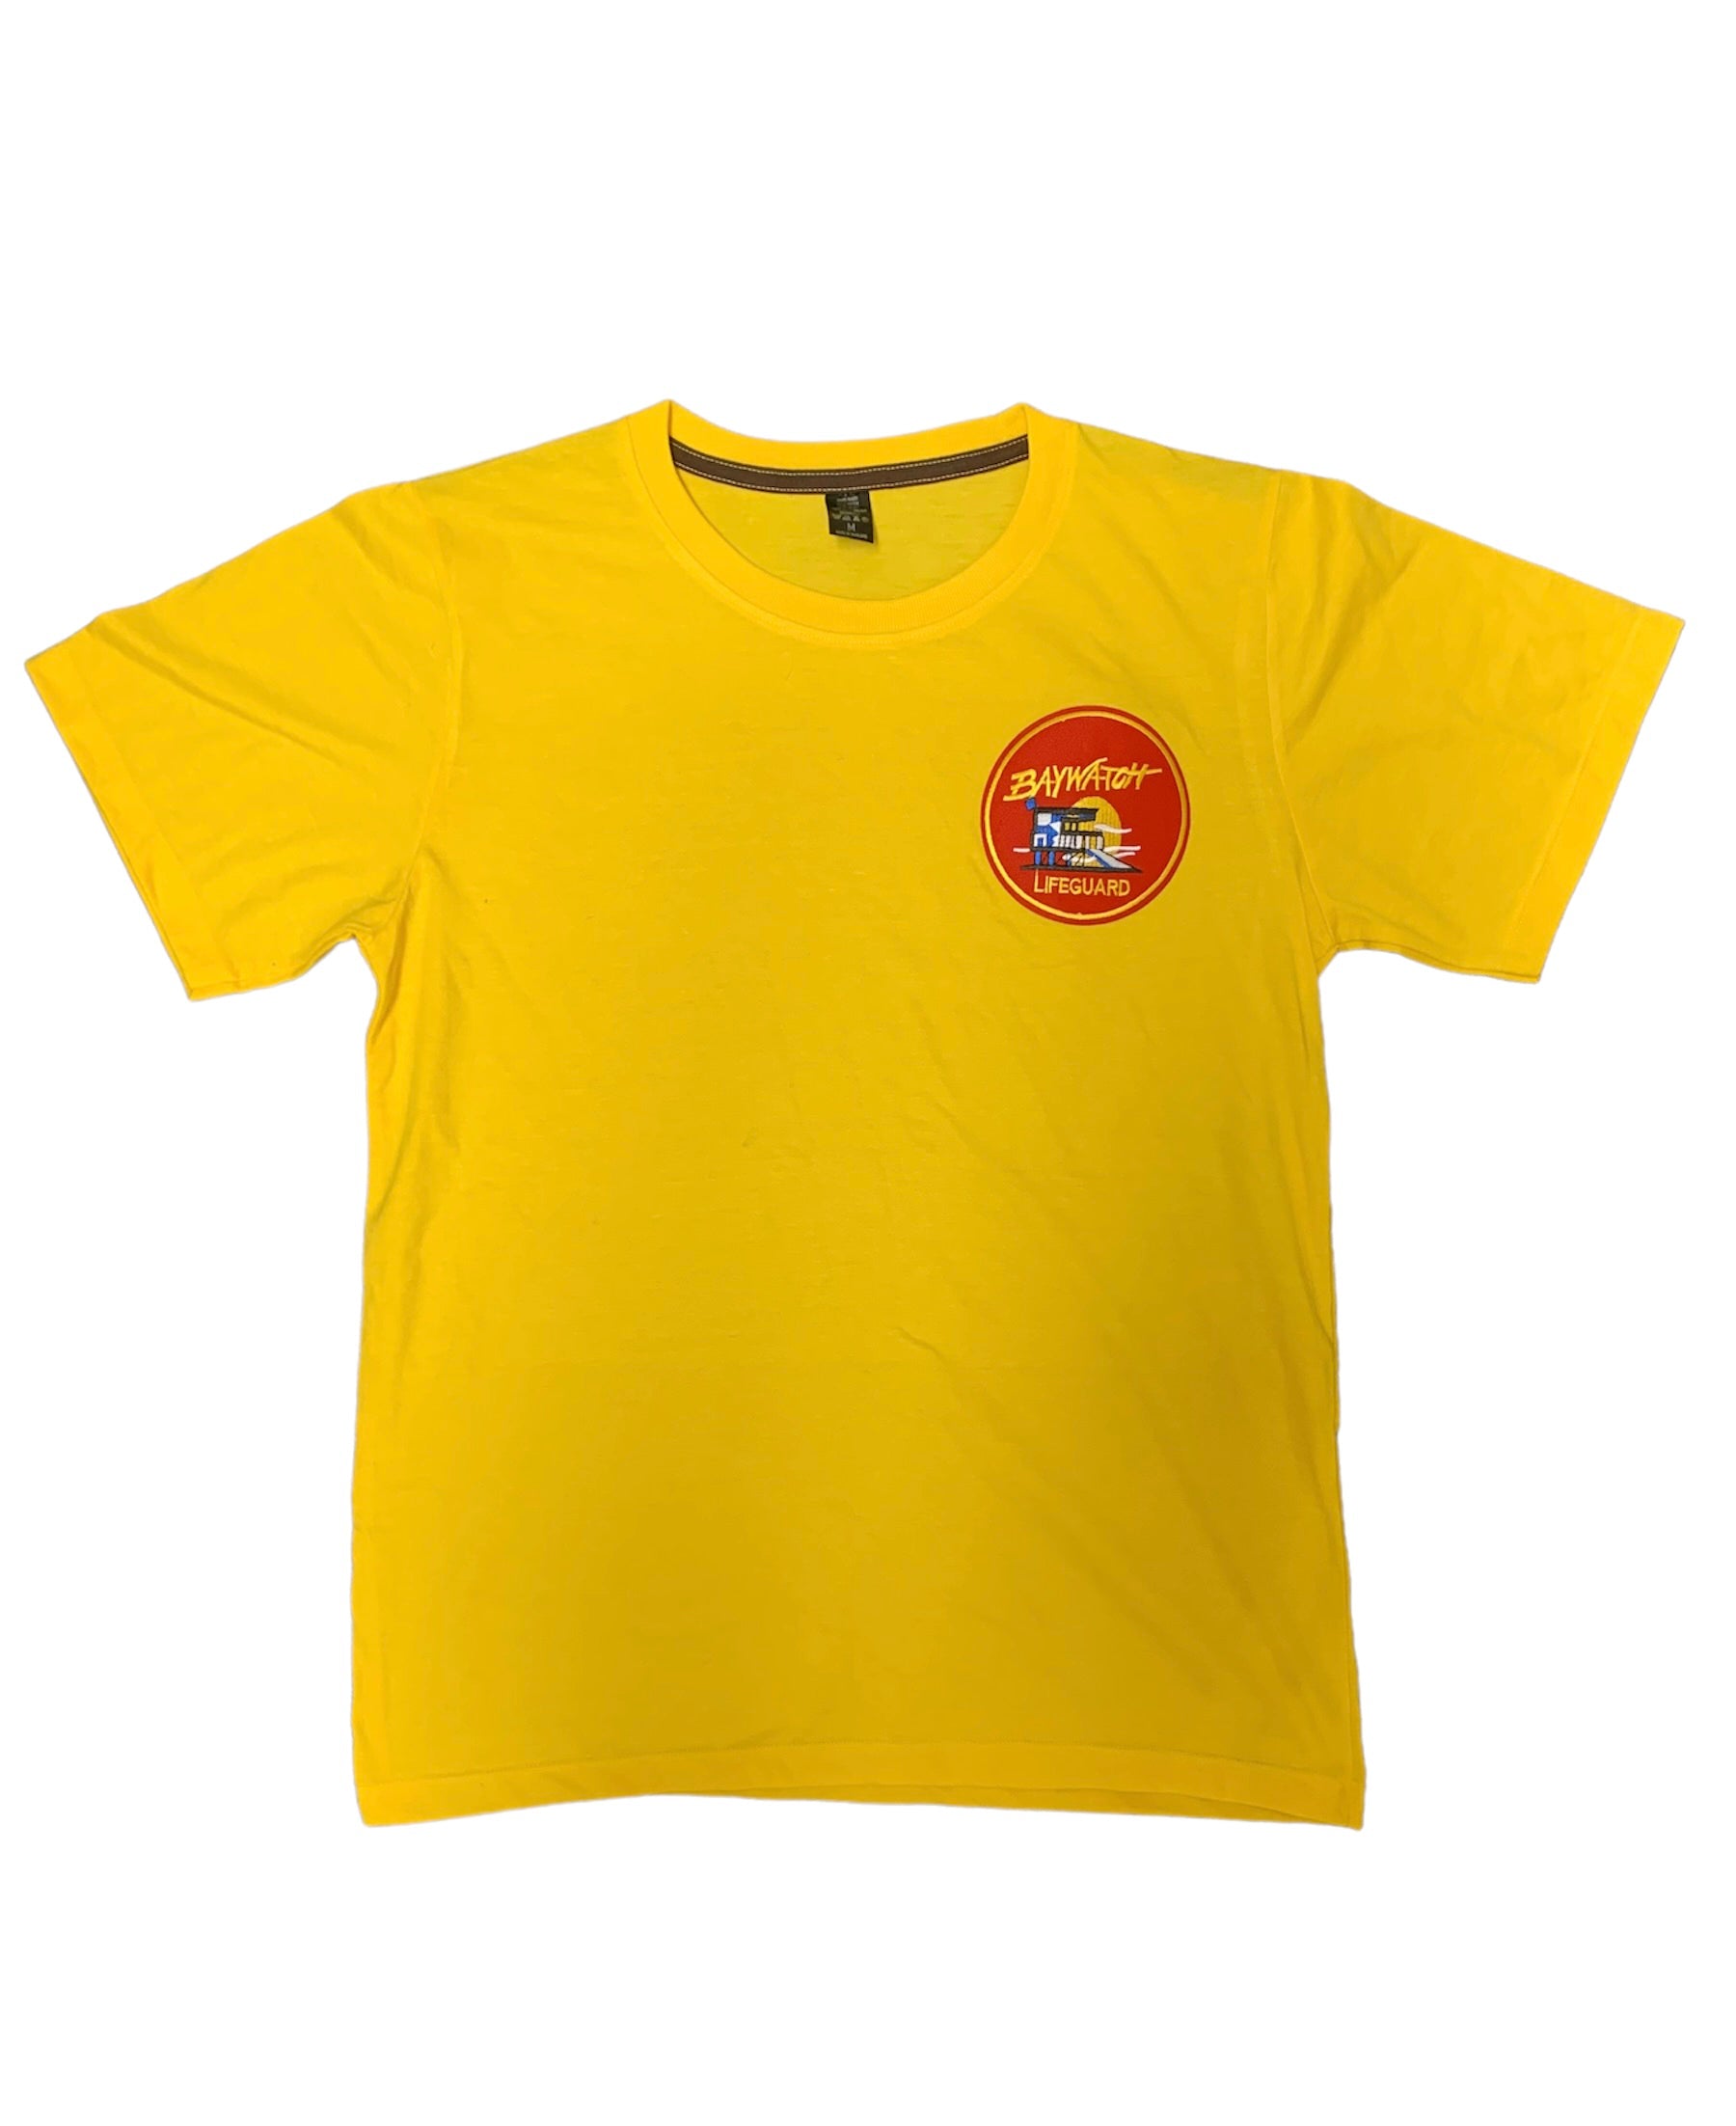 Women's Baywatch Yellow T-shirt Perth | Hurly-Burly